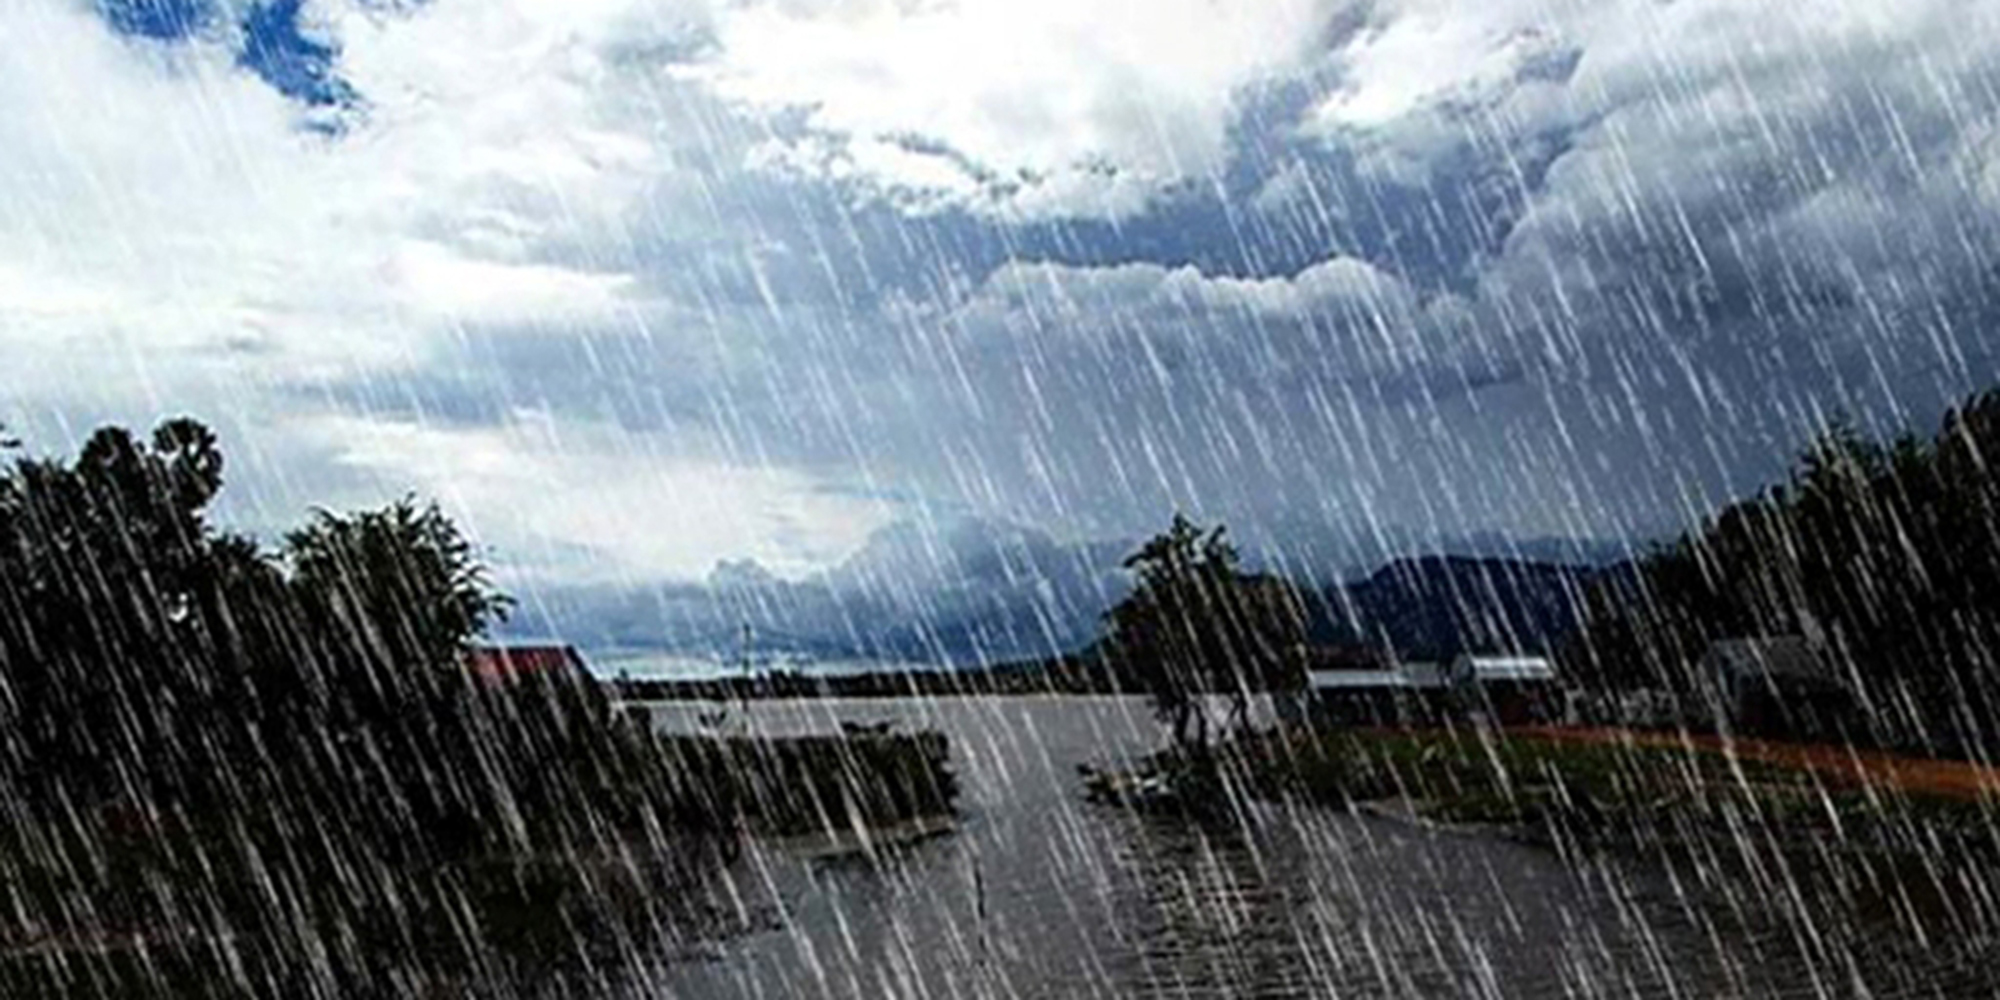 आज लुम्बिनी प्रदेशका थोरै स्थानहरुमा भारी वर्षा हुने